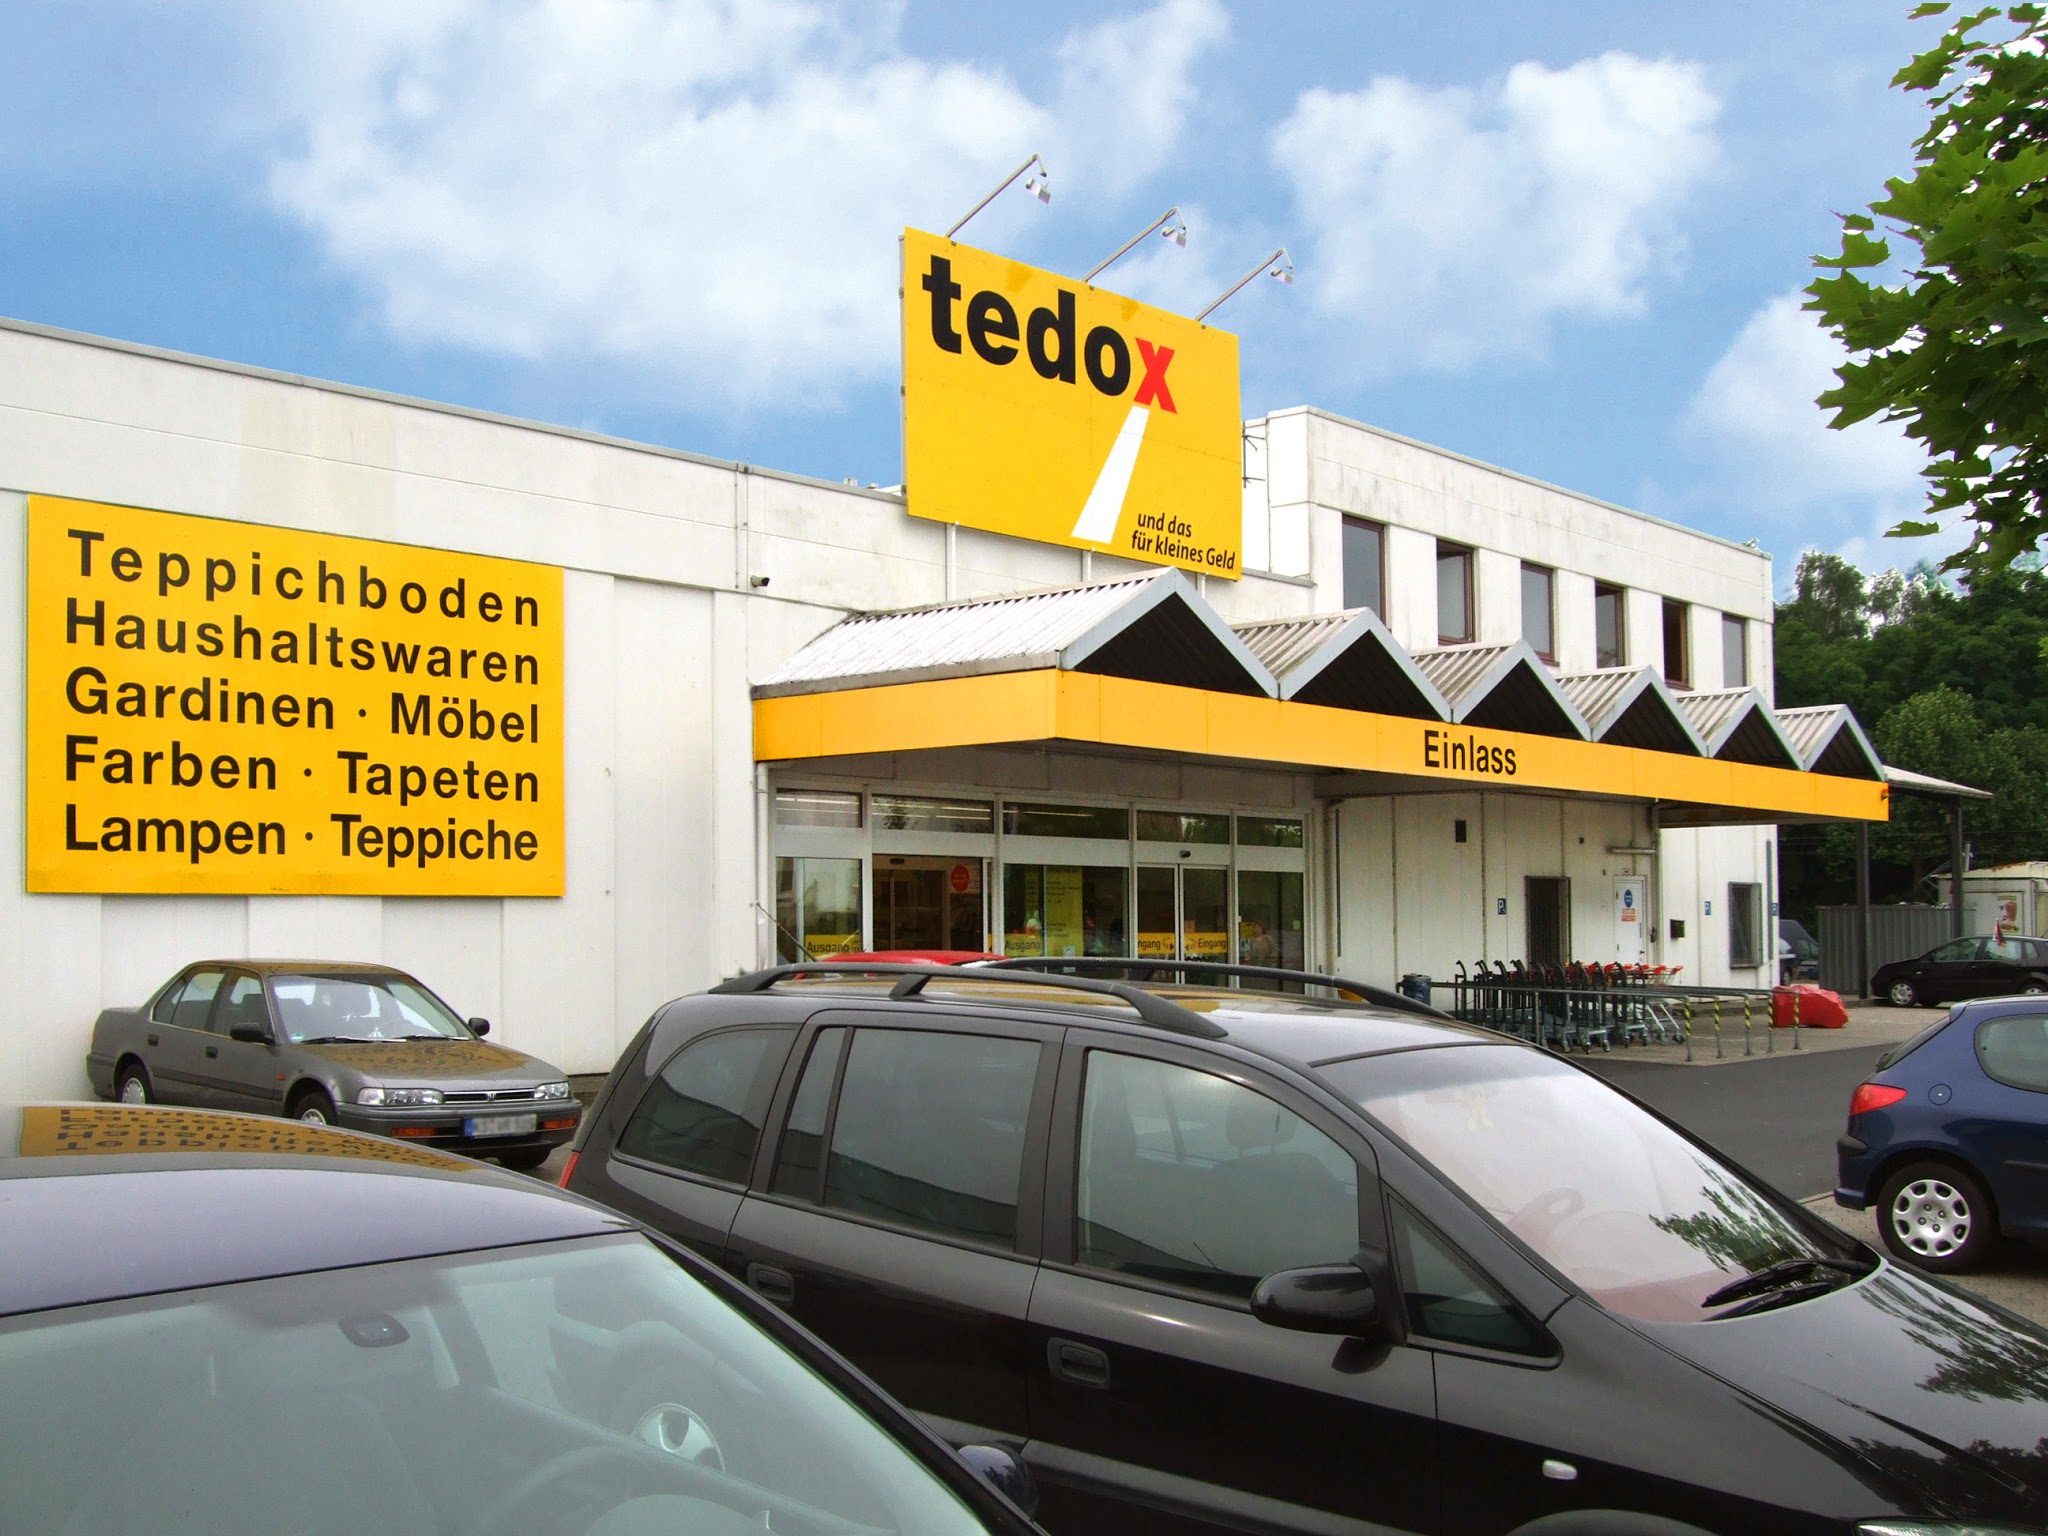 tedox KG, Holländische Straße 214/226 in Kassel